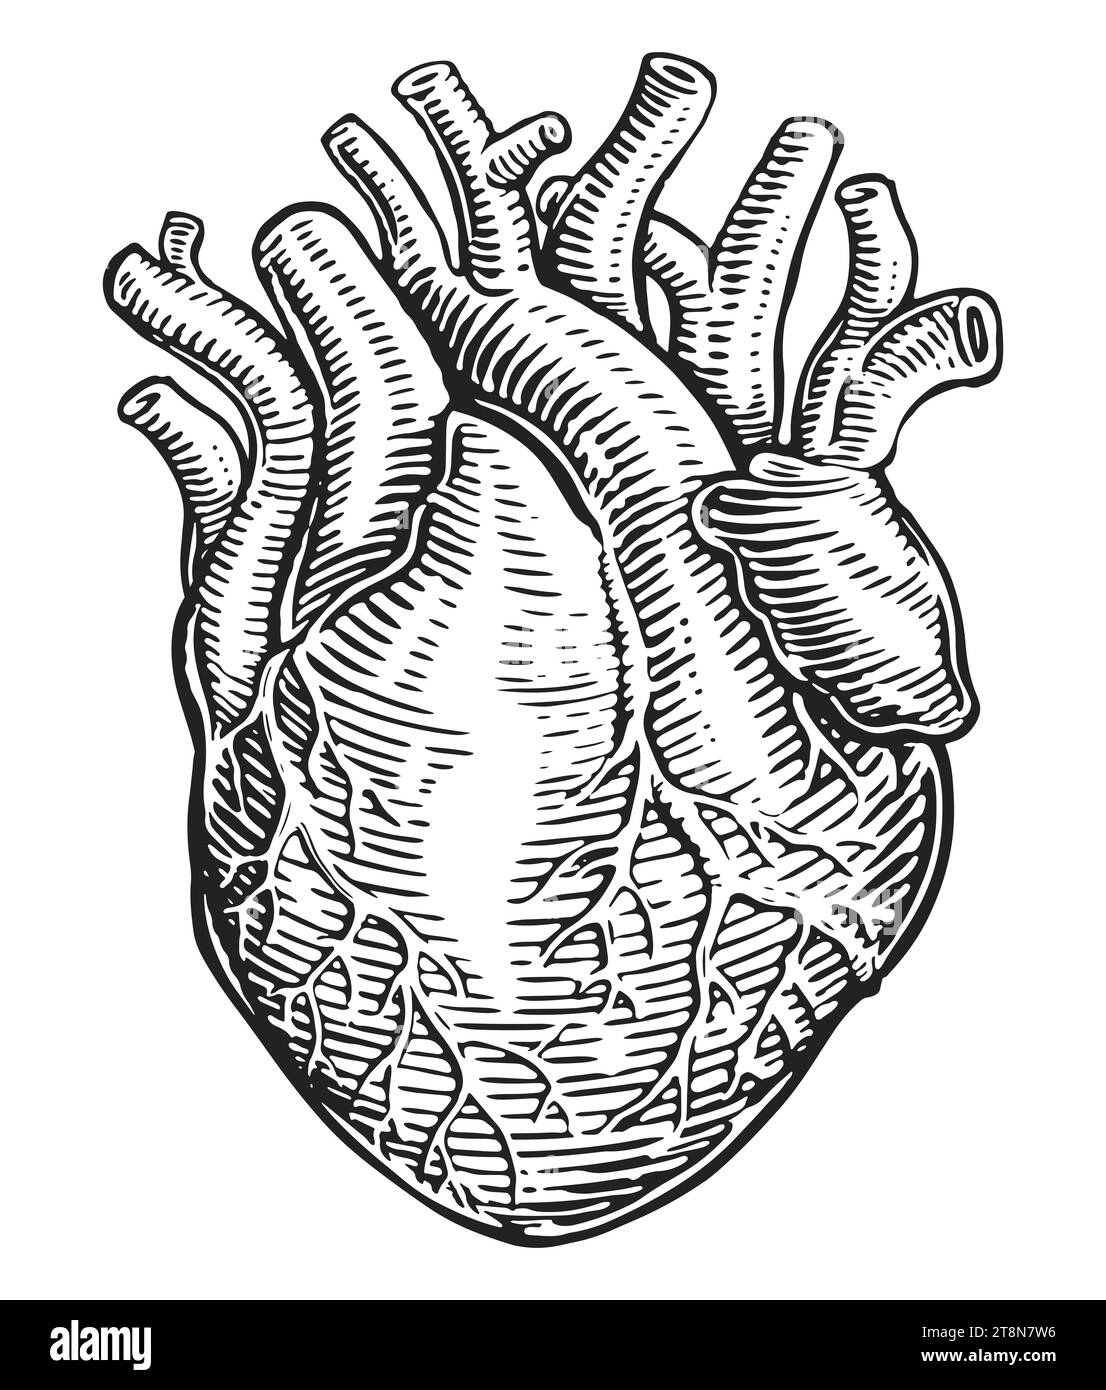 Muscolo cardiaco umano e vasi sanguigni disegnati a mano in stile vintage. Anatomia, illustrazione dello schizzo Foto Stock